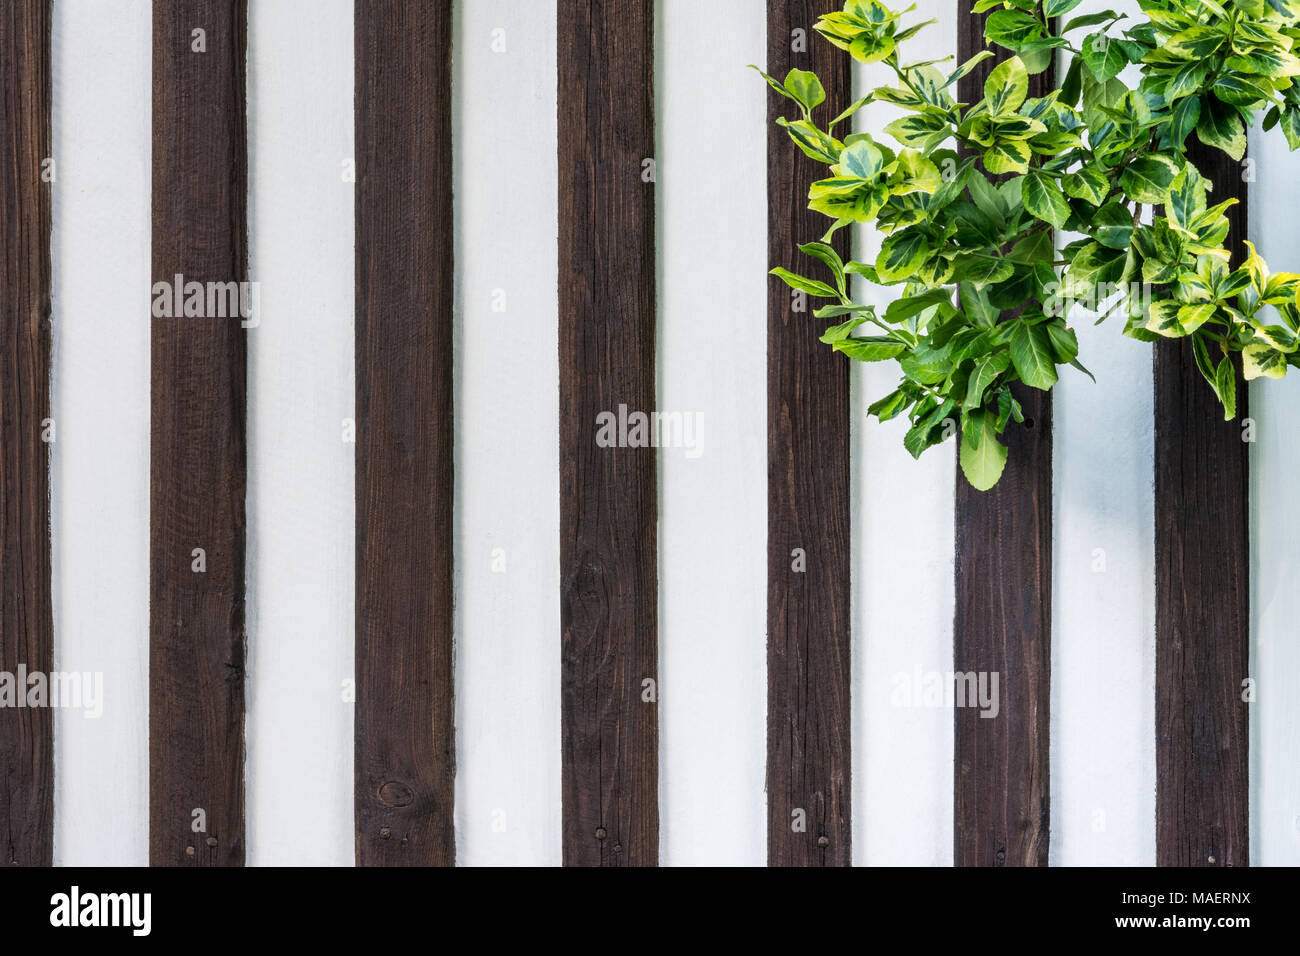 Pareti in legno con edera rampicante. Hedera. Recinzione di bianco con strisce verticali di colore marrone listelli di legno e bellissima pianta verde nell'angolo. Foto Stock